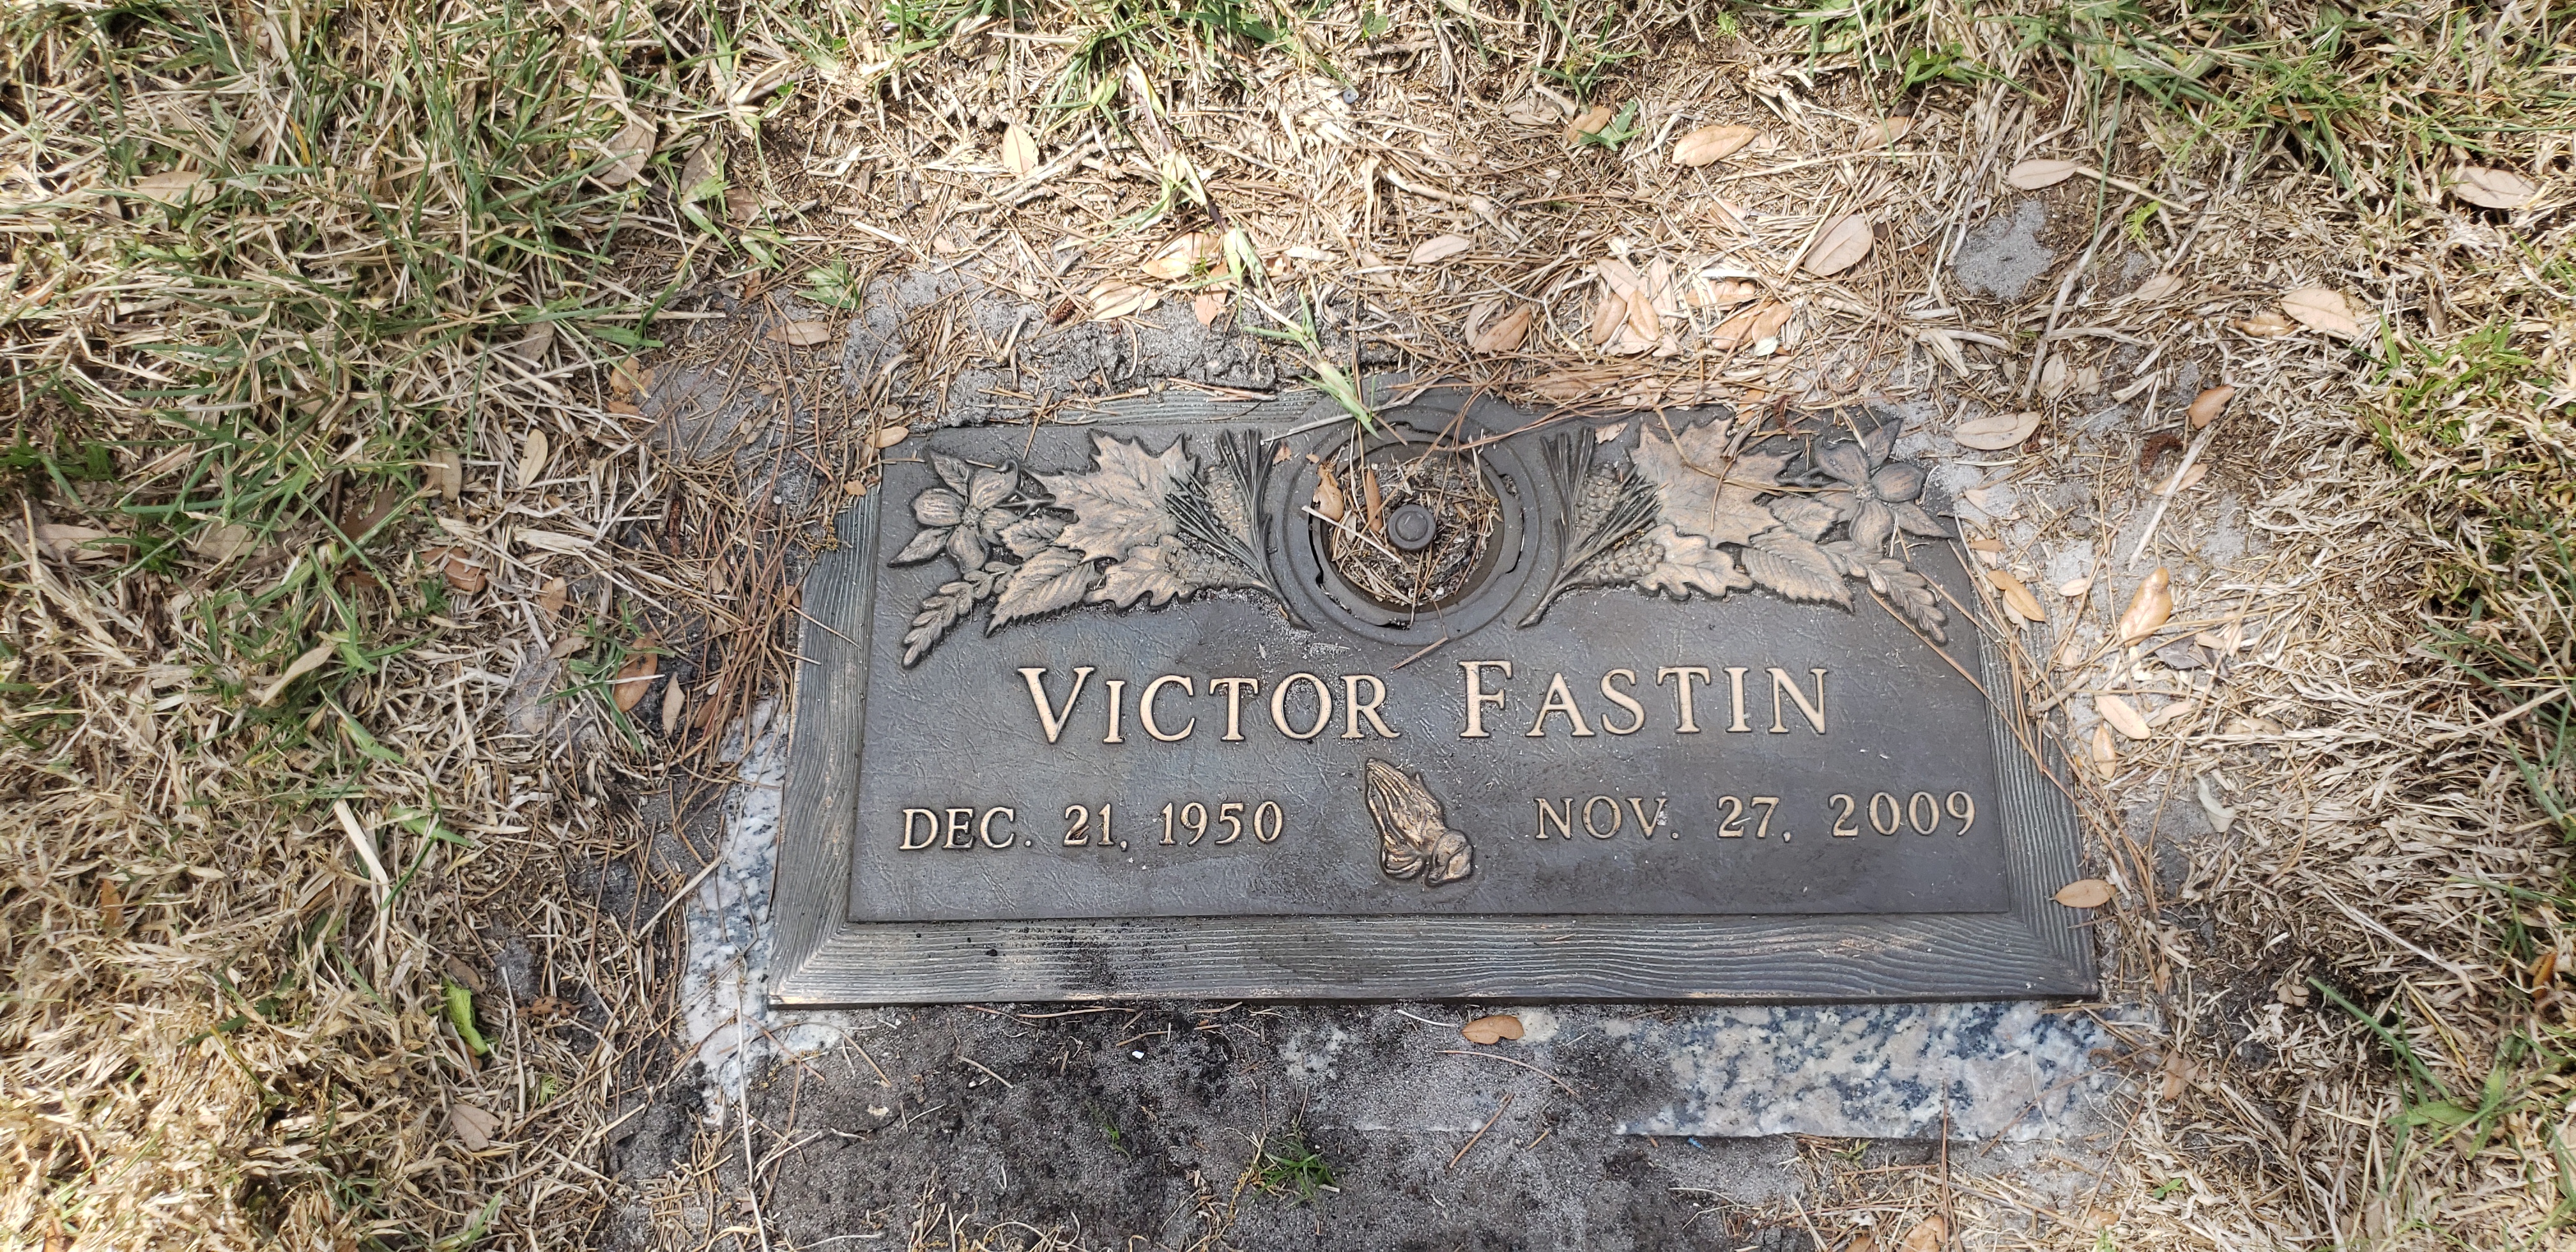 Victor Fastin